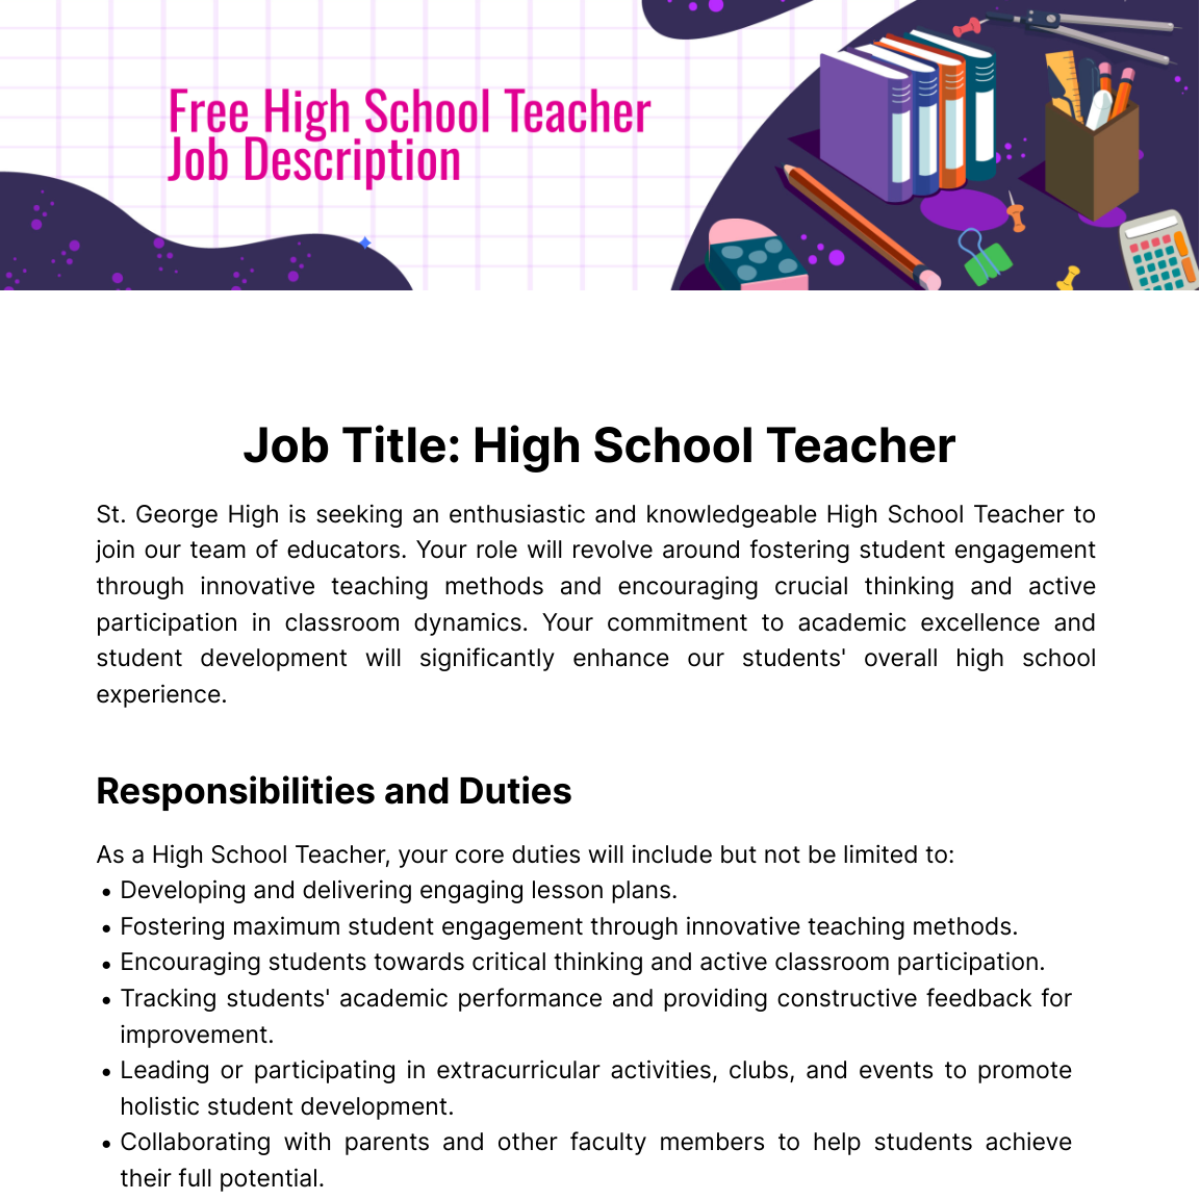 Free High School Teacher Job Description Template